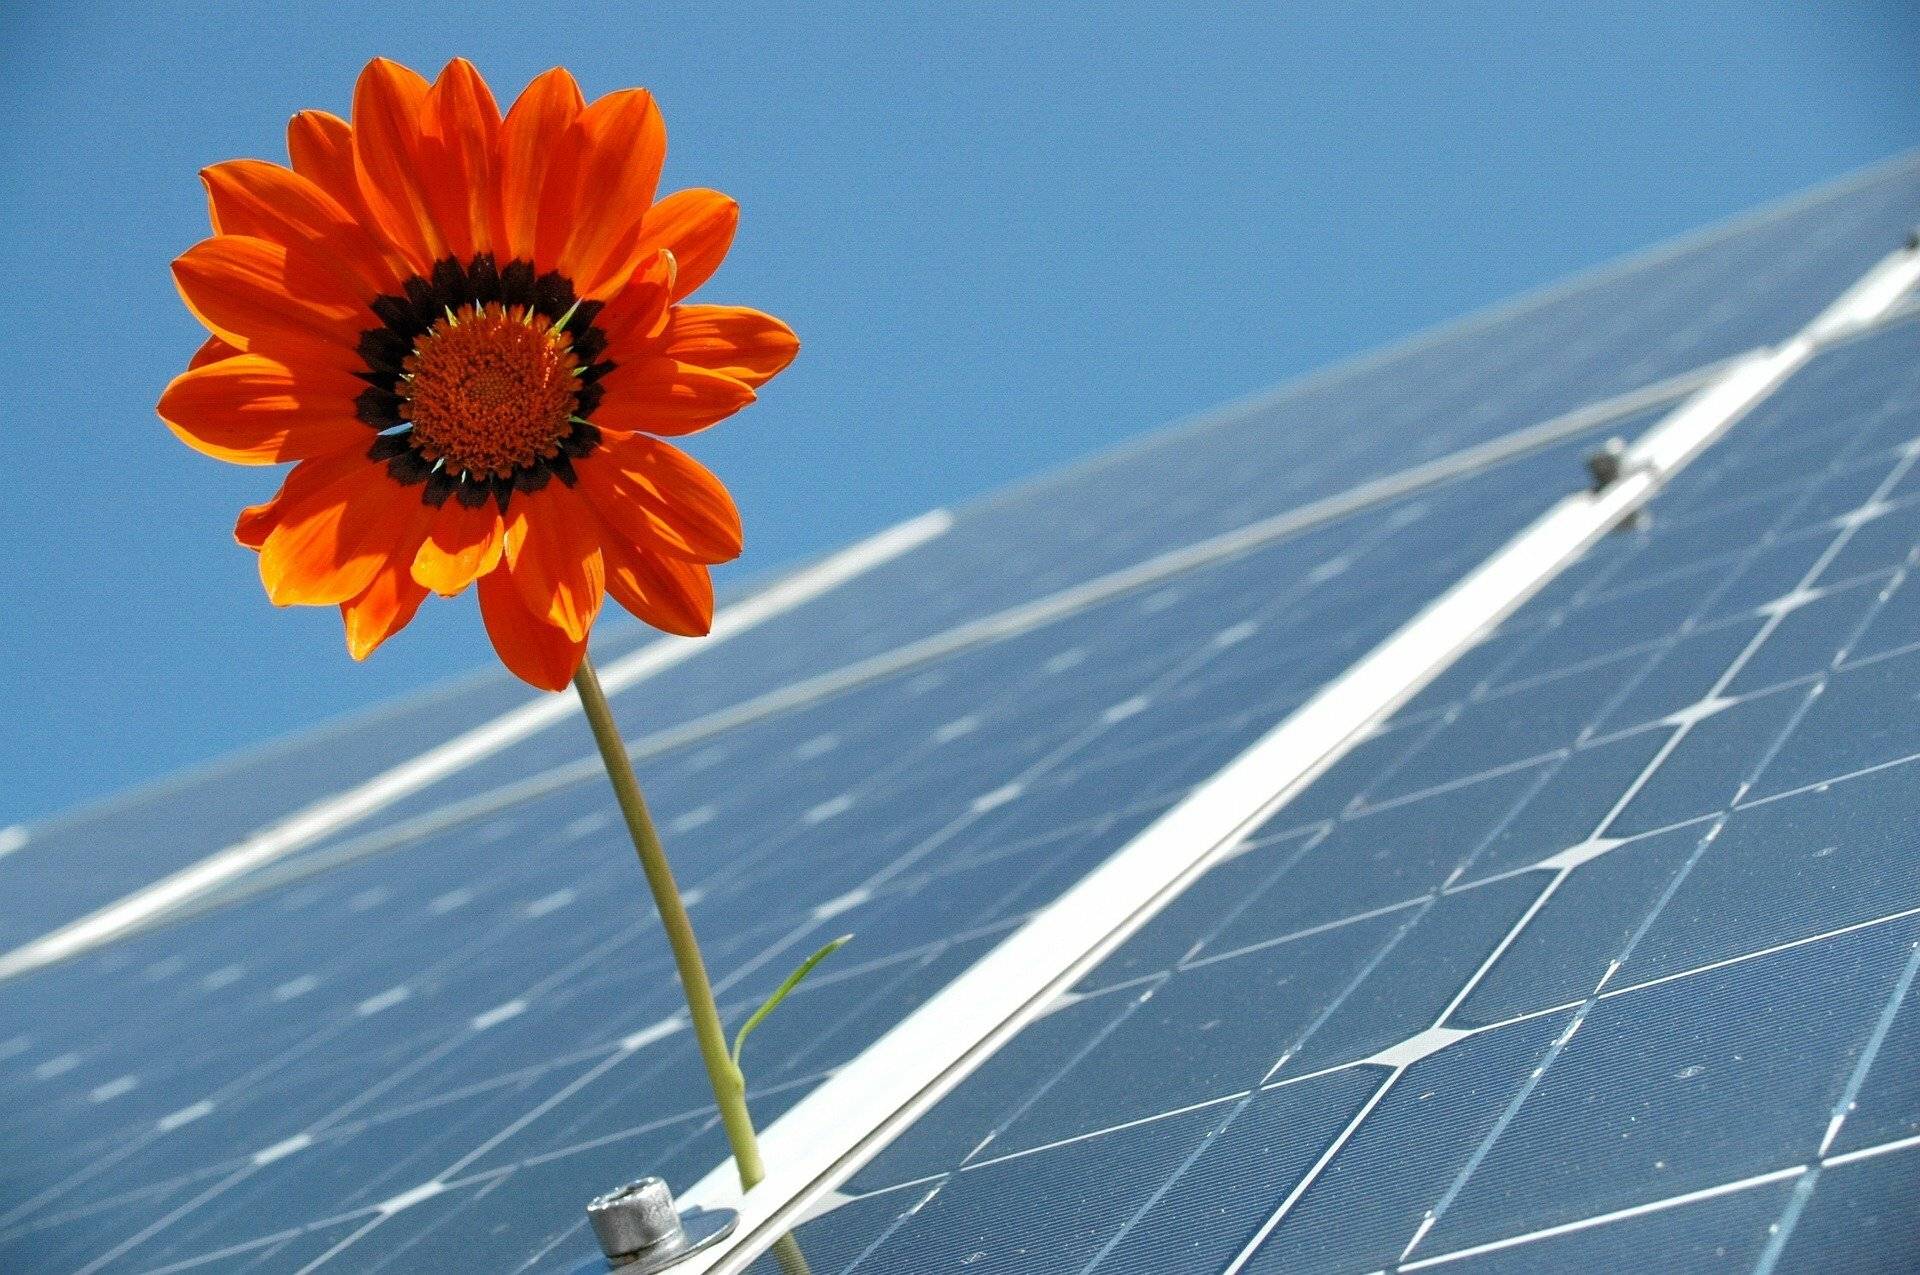 ALTBAUNEU informiert: Online-Seminare zur Photovoltaik im Juli